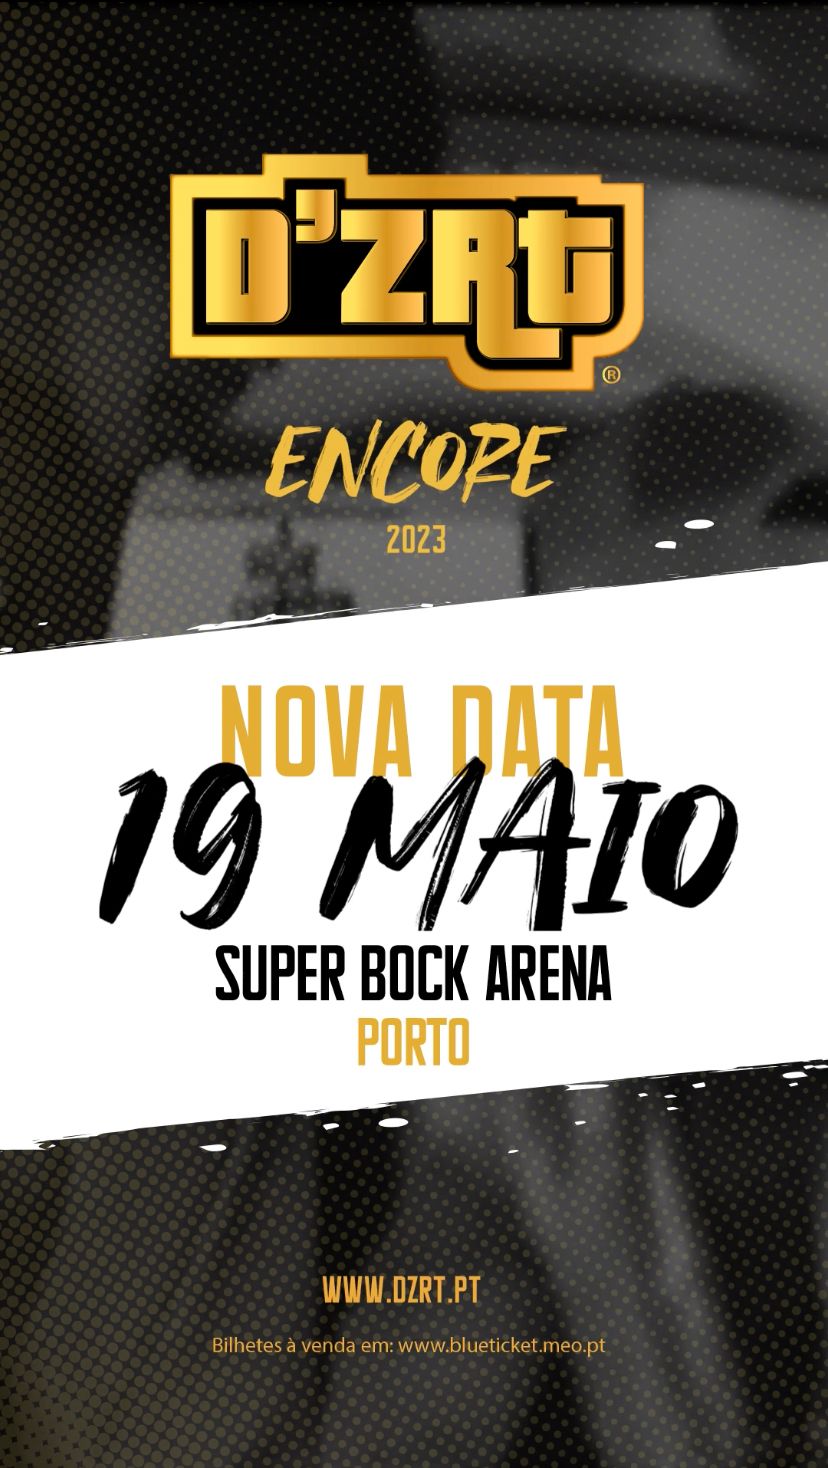 D’ZRT Encore 2023 - Super Bock Arena